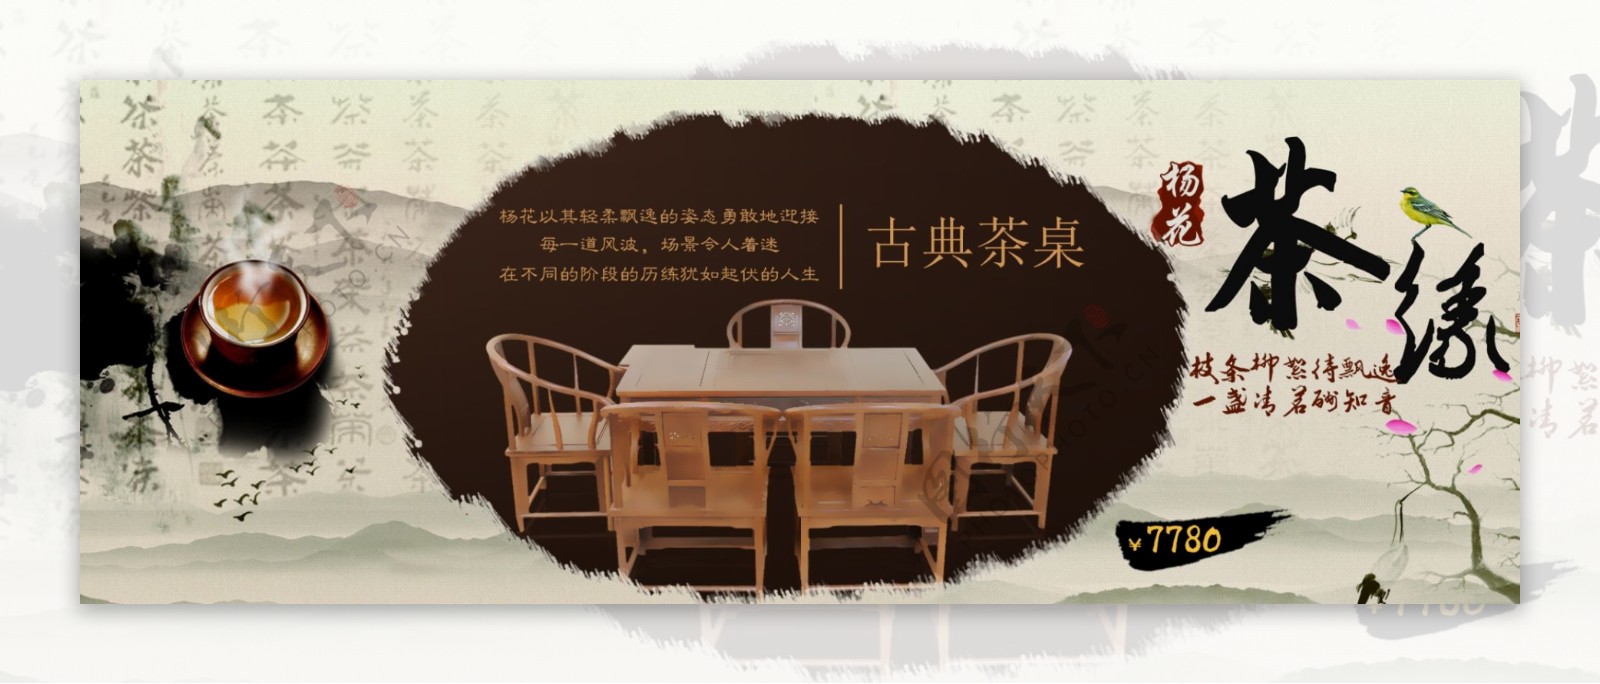 中式古典家具设计